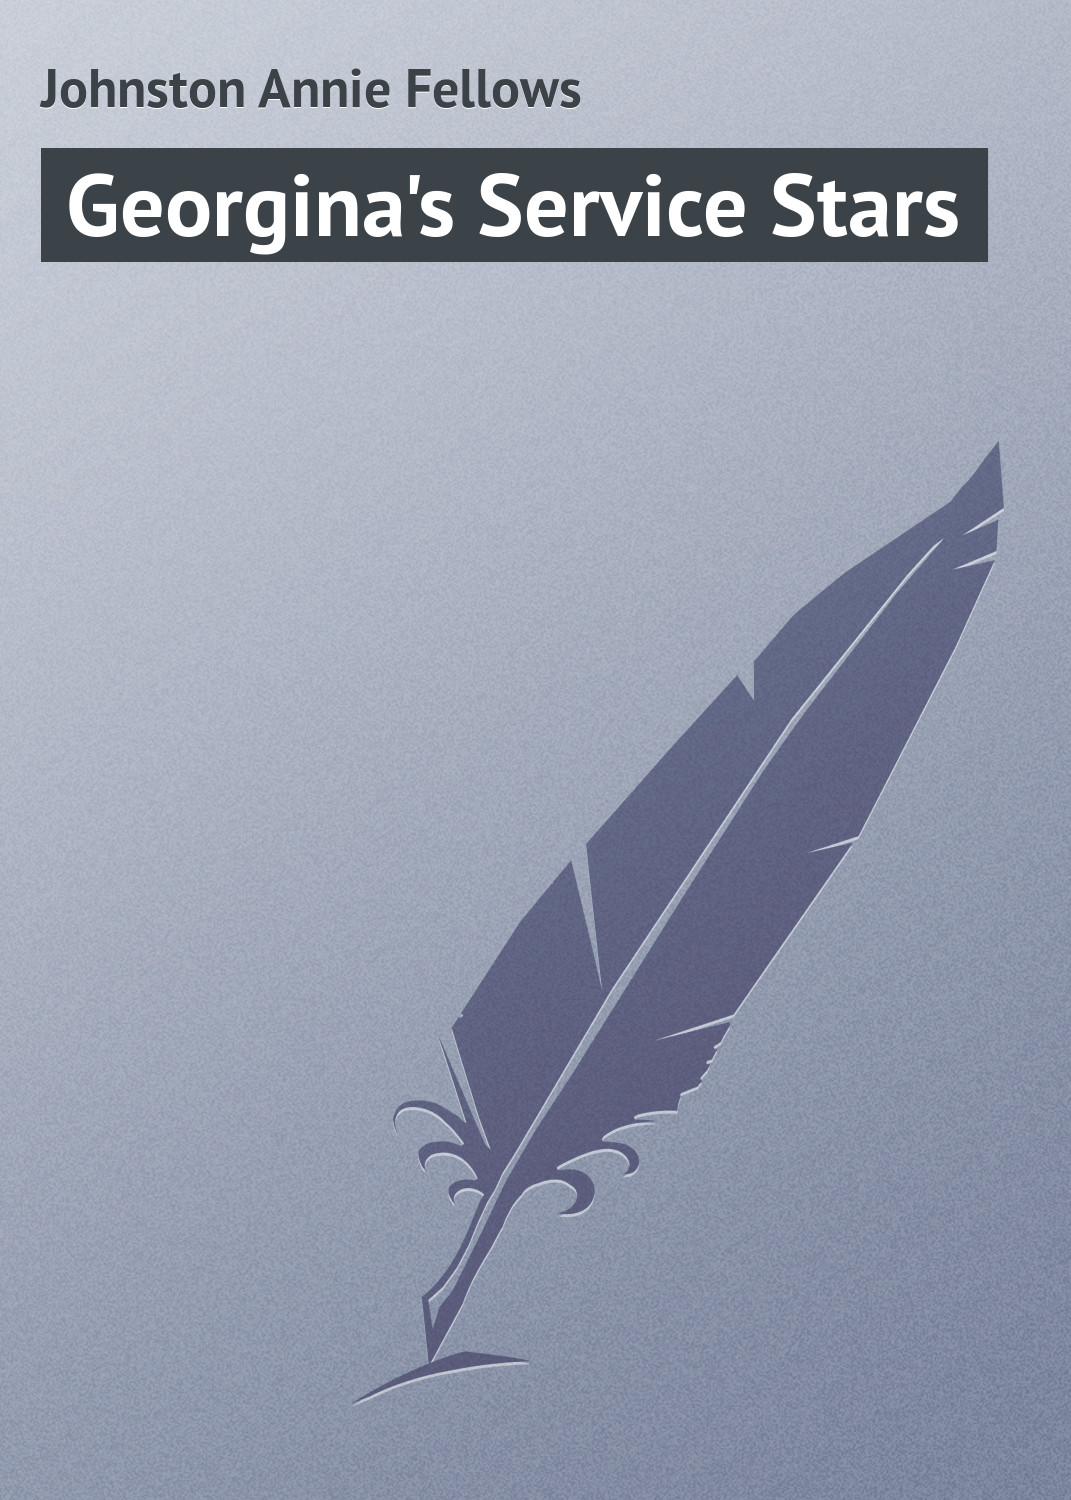 Книга Georgina's Service Stars из серии , созданная Annie Johnston, может относится к жанру Зарубежная классика. Стоимость электронной книги Georgina's Service Stars с идентификатором 23154987 составляет 5.99 руб.